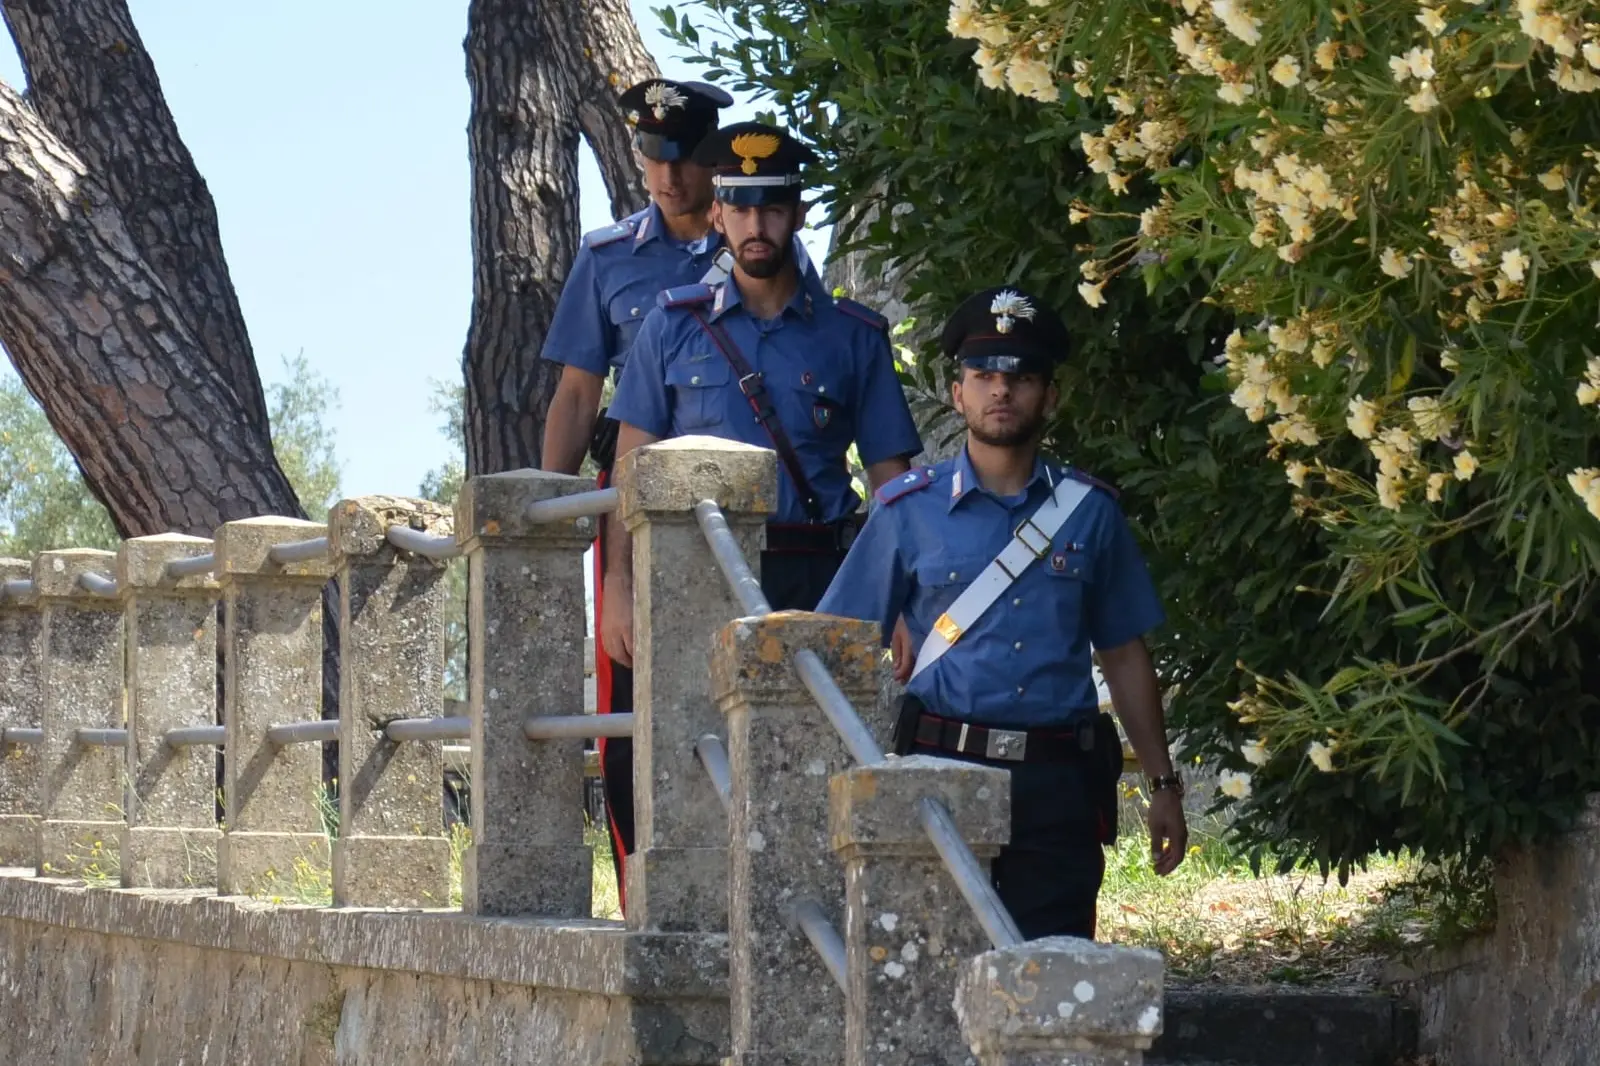 Carabinieri (foto Cc)